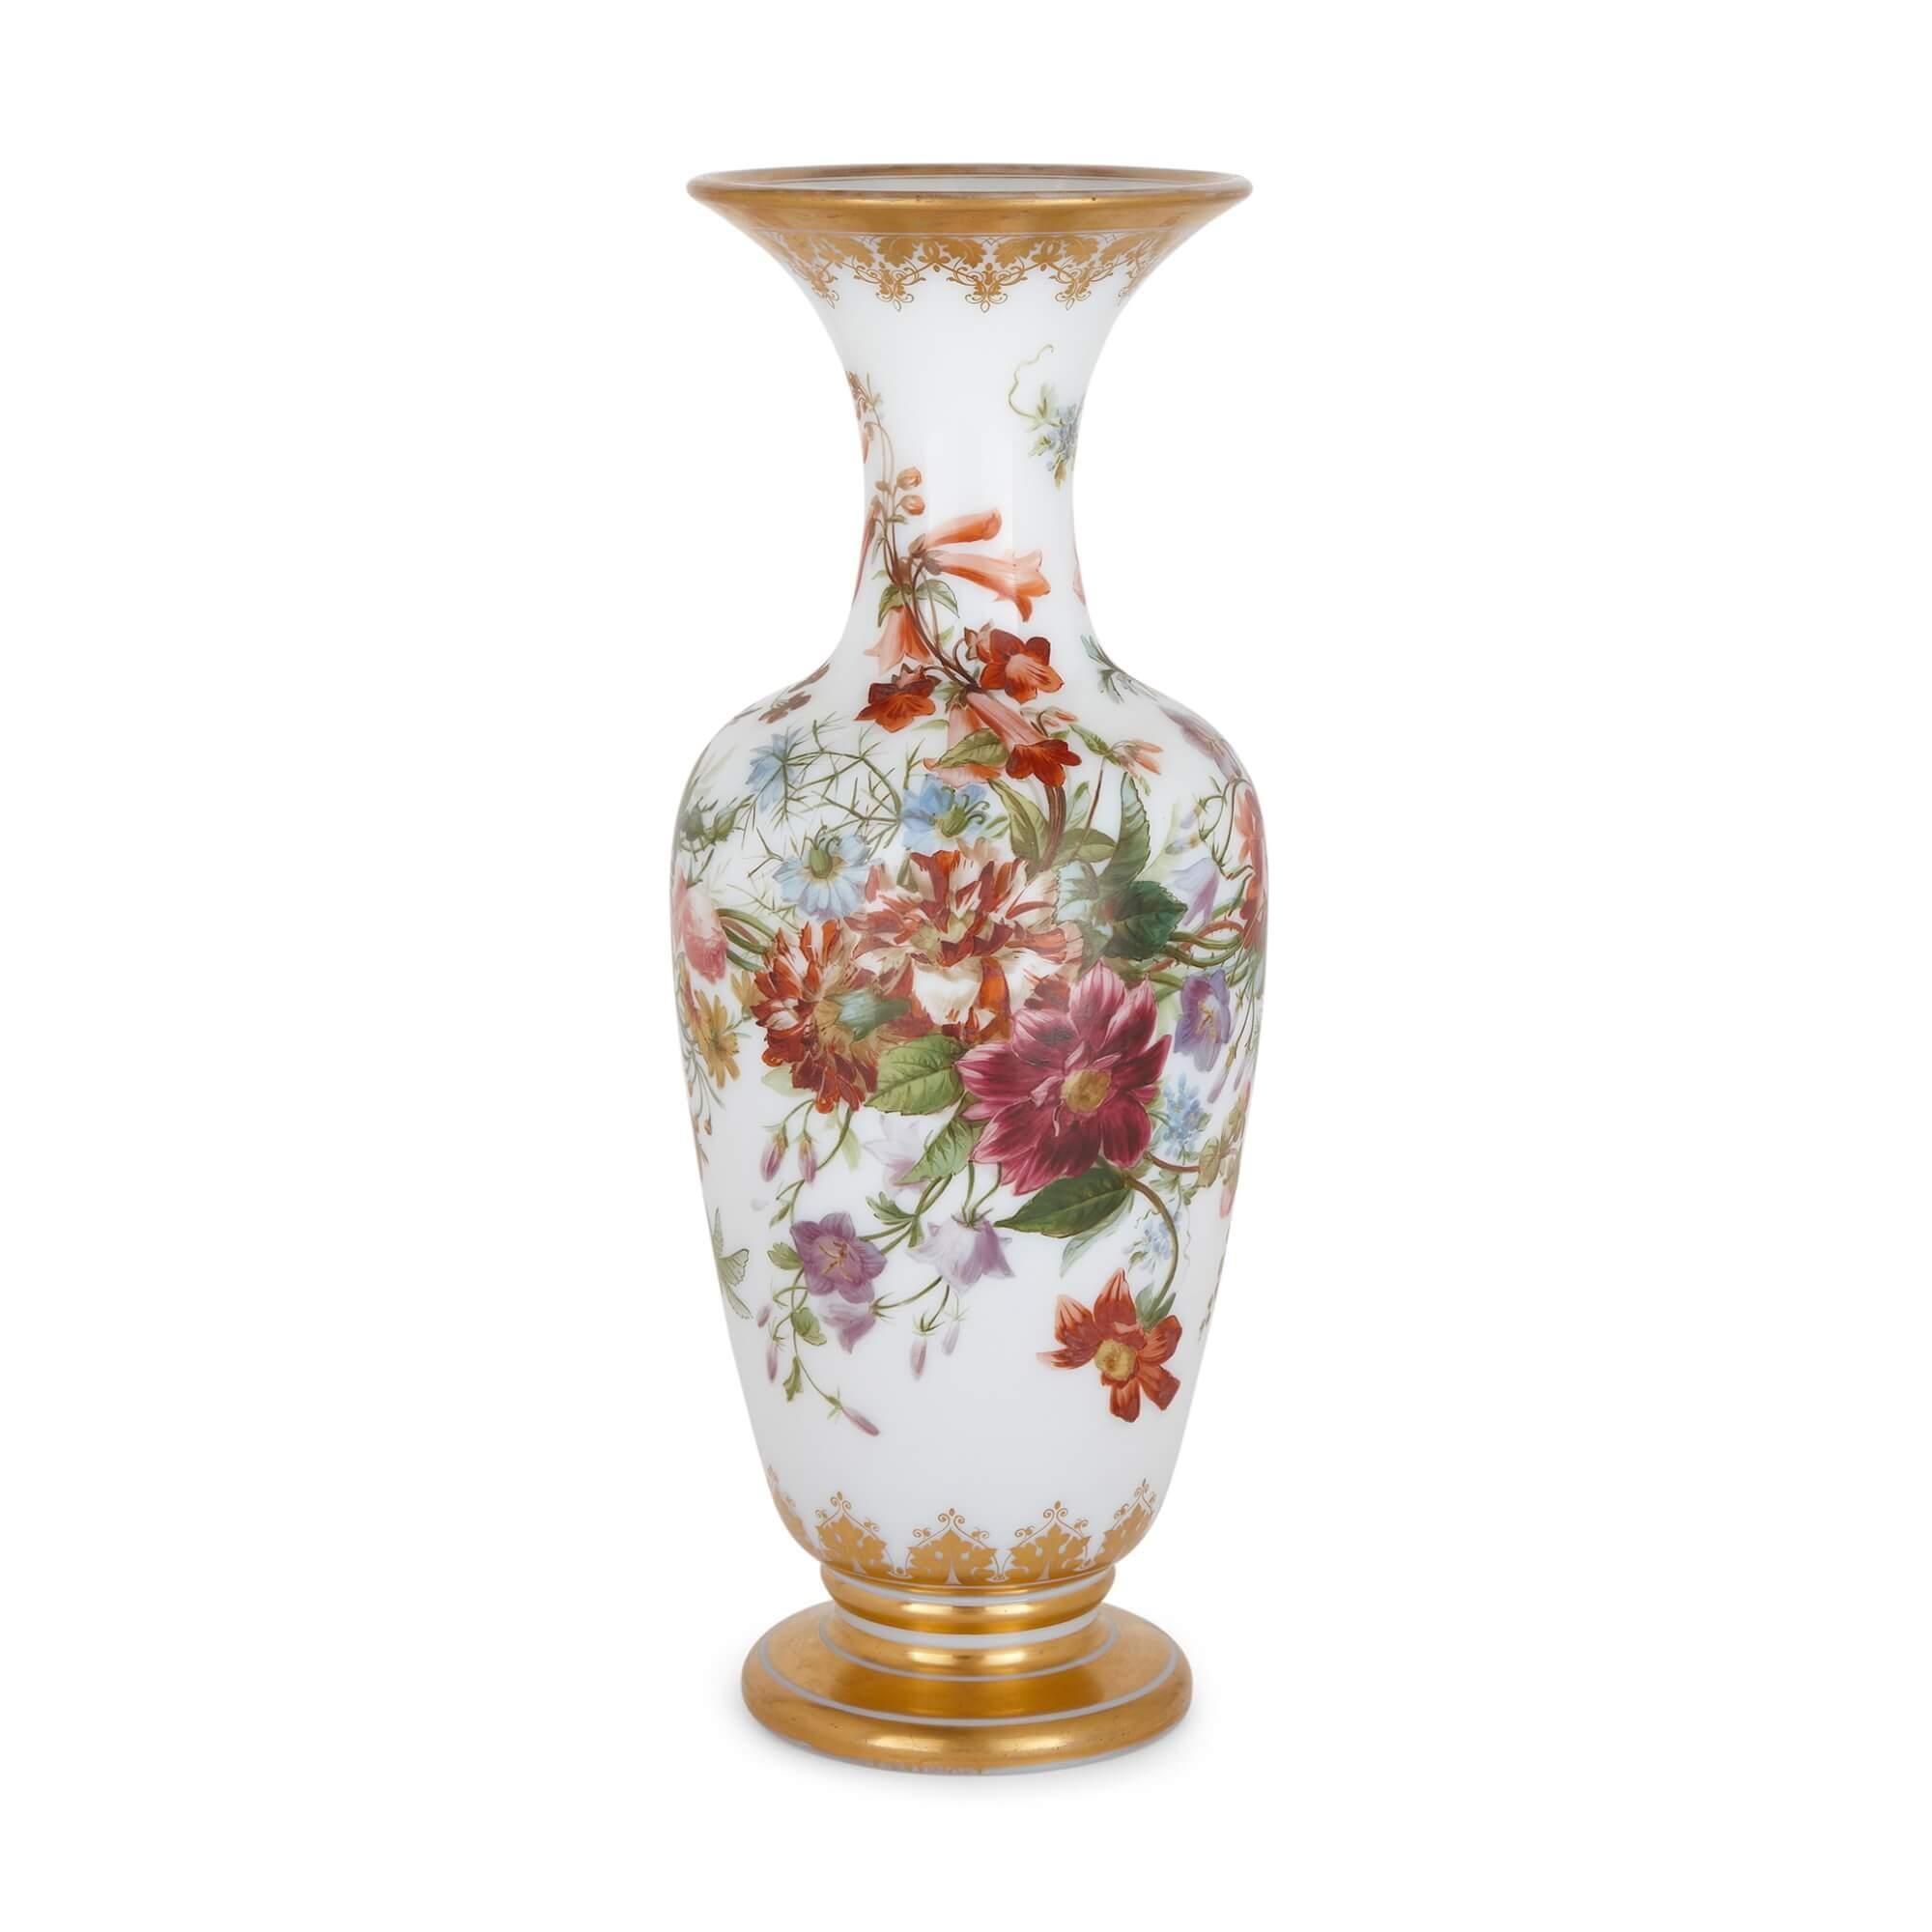 Vase en verre ancien peint de façon florale par Baccarat.
Français, 19ème siècle.
Mesures : hauteur 45cm, diamètre 18cm.

Fabriqué par la maison française Baccarat, qui jouit d'une réputation exceptionnelle, ce magnifique vase est en verre et